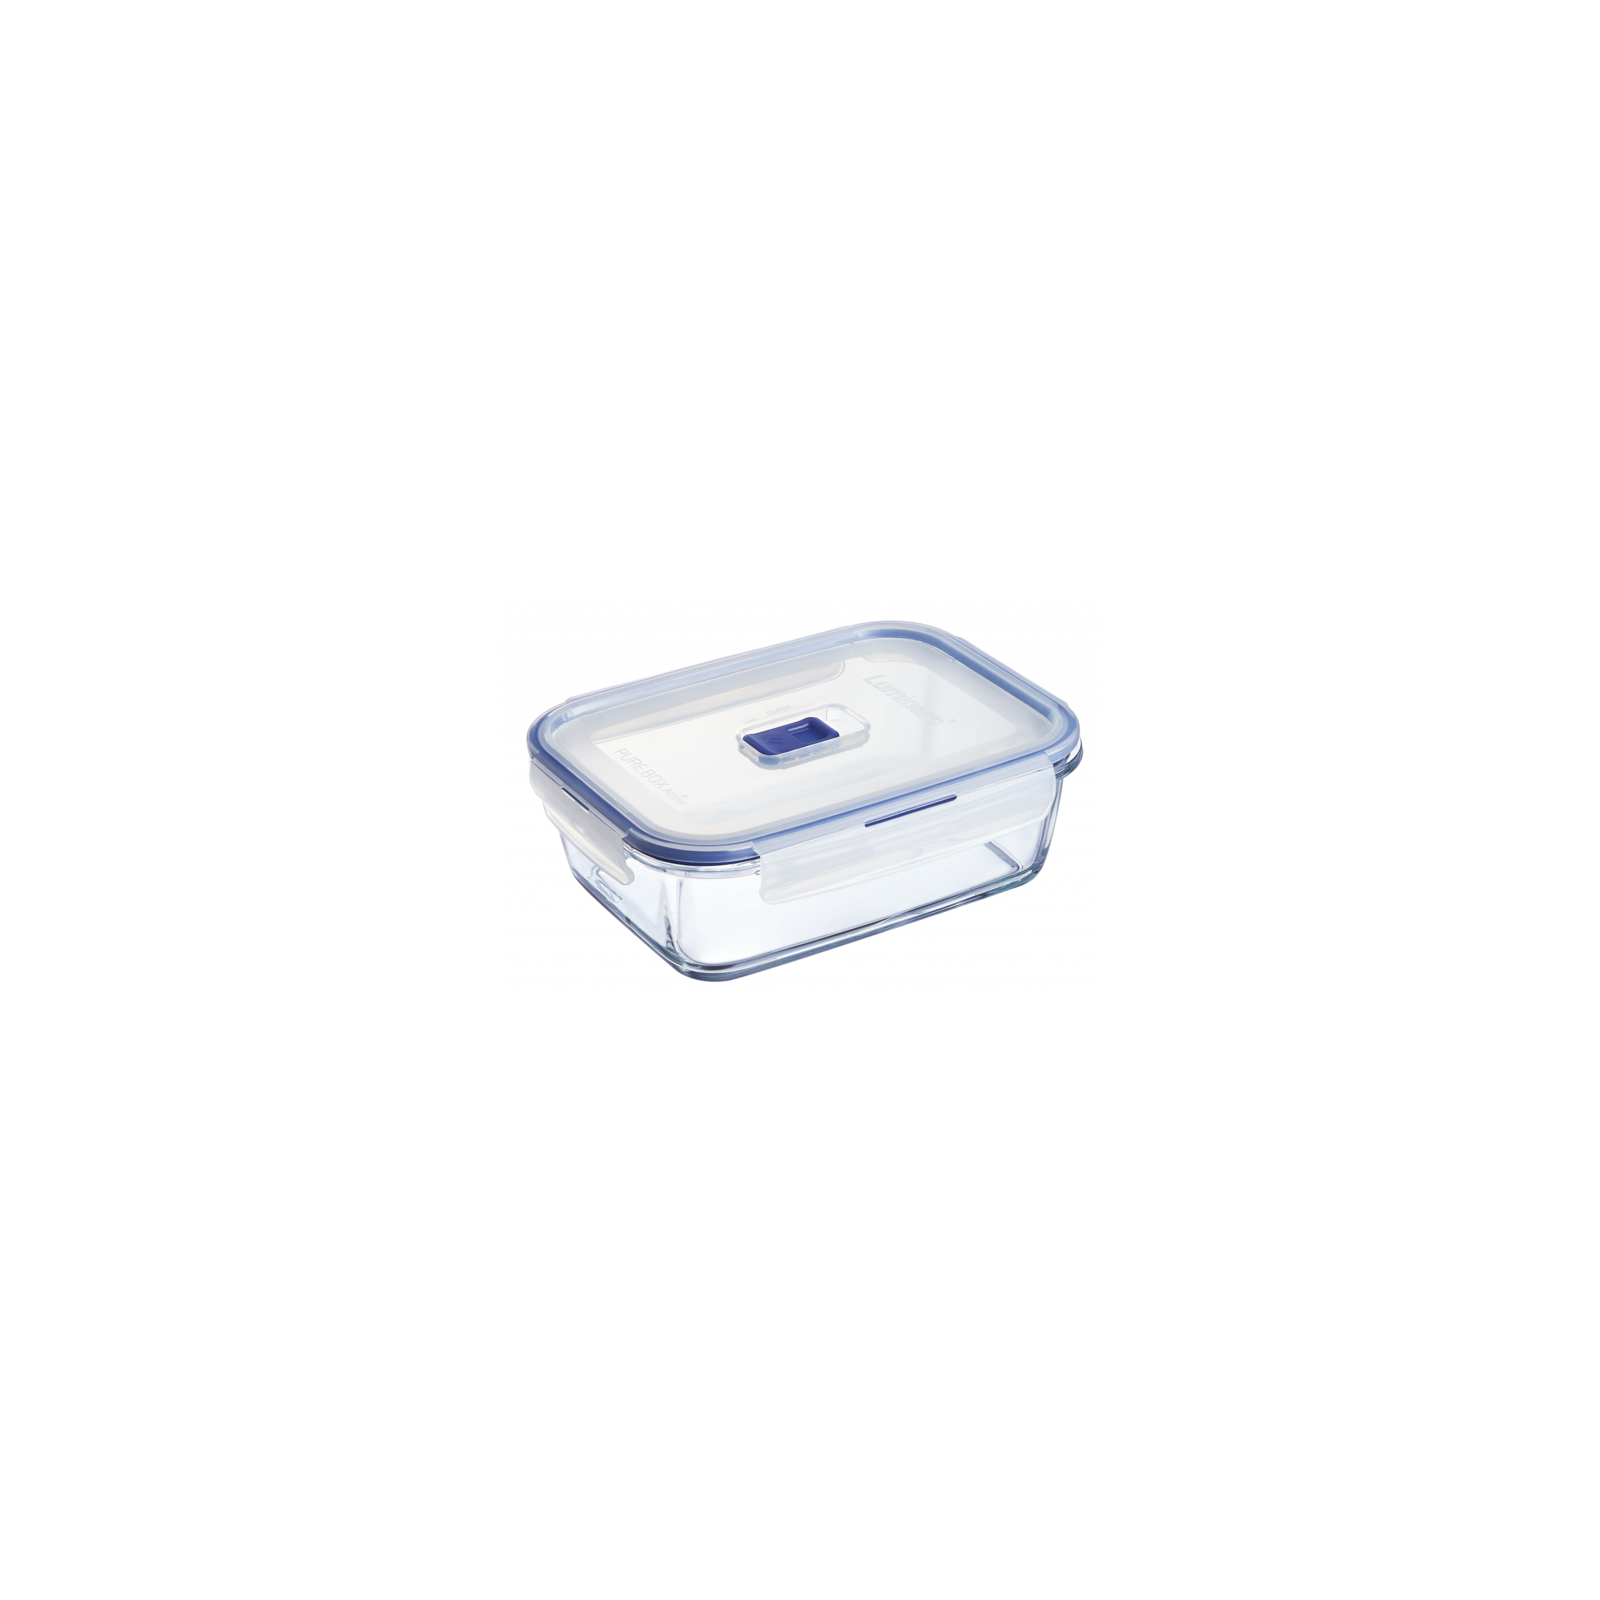 Пищевой контейнер Luminarc Pure Box Active набор 4шт прямоуг. 380мл/820мл/1220мл/1970мл (P5277) изображение 4